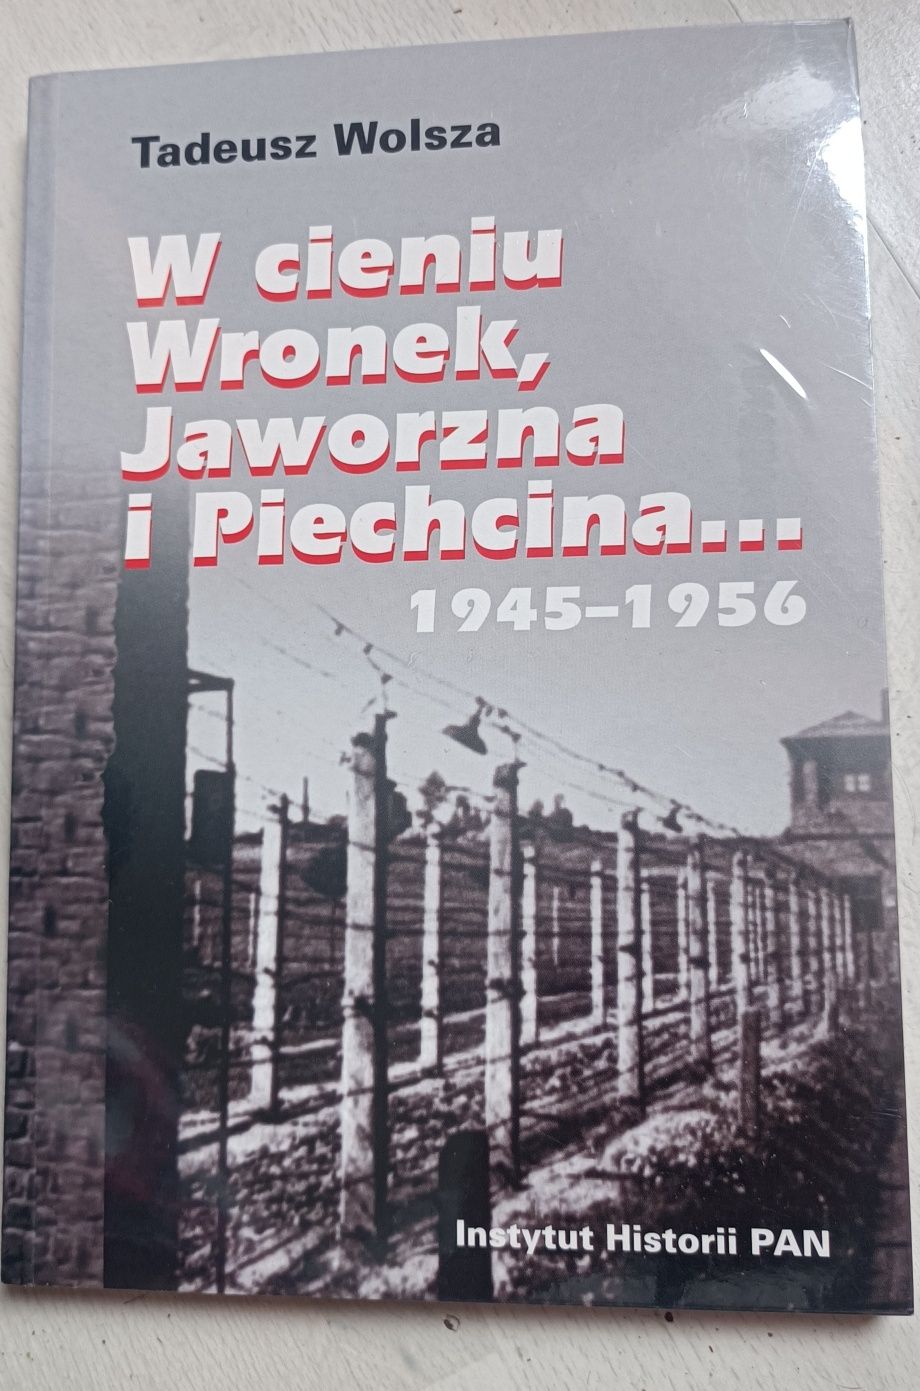 W cieniu Wronek, Jaworzna i Piechcina.. 1945/1956 Tadeusz Wolsza